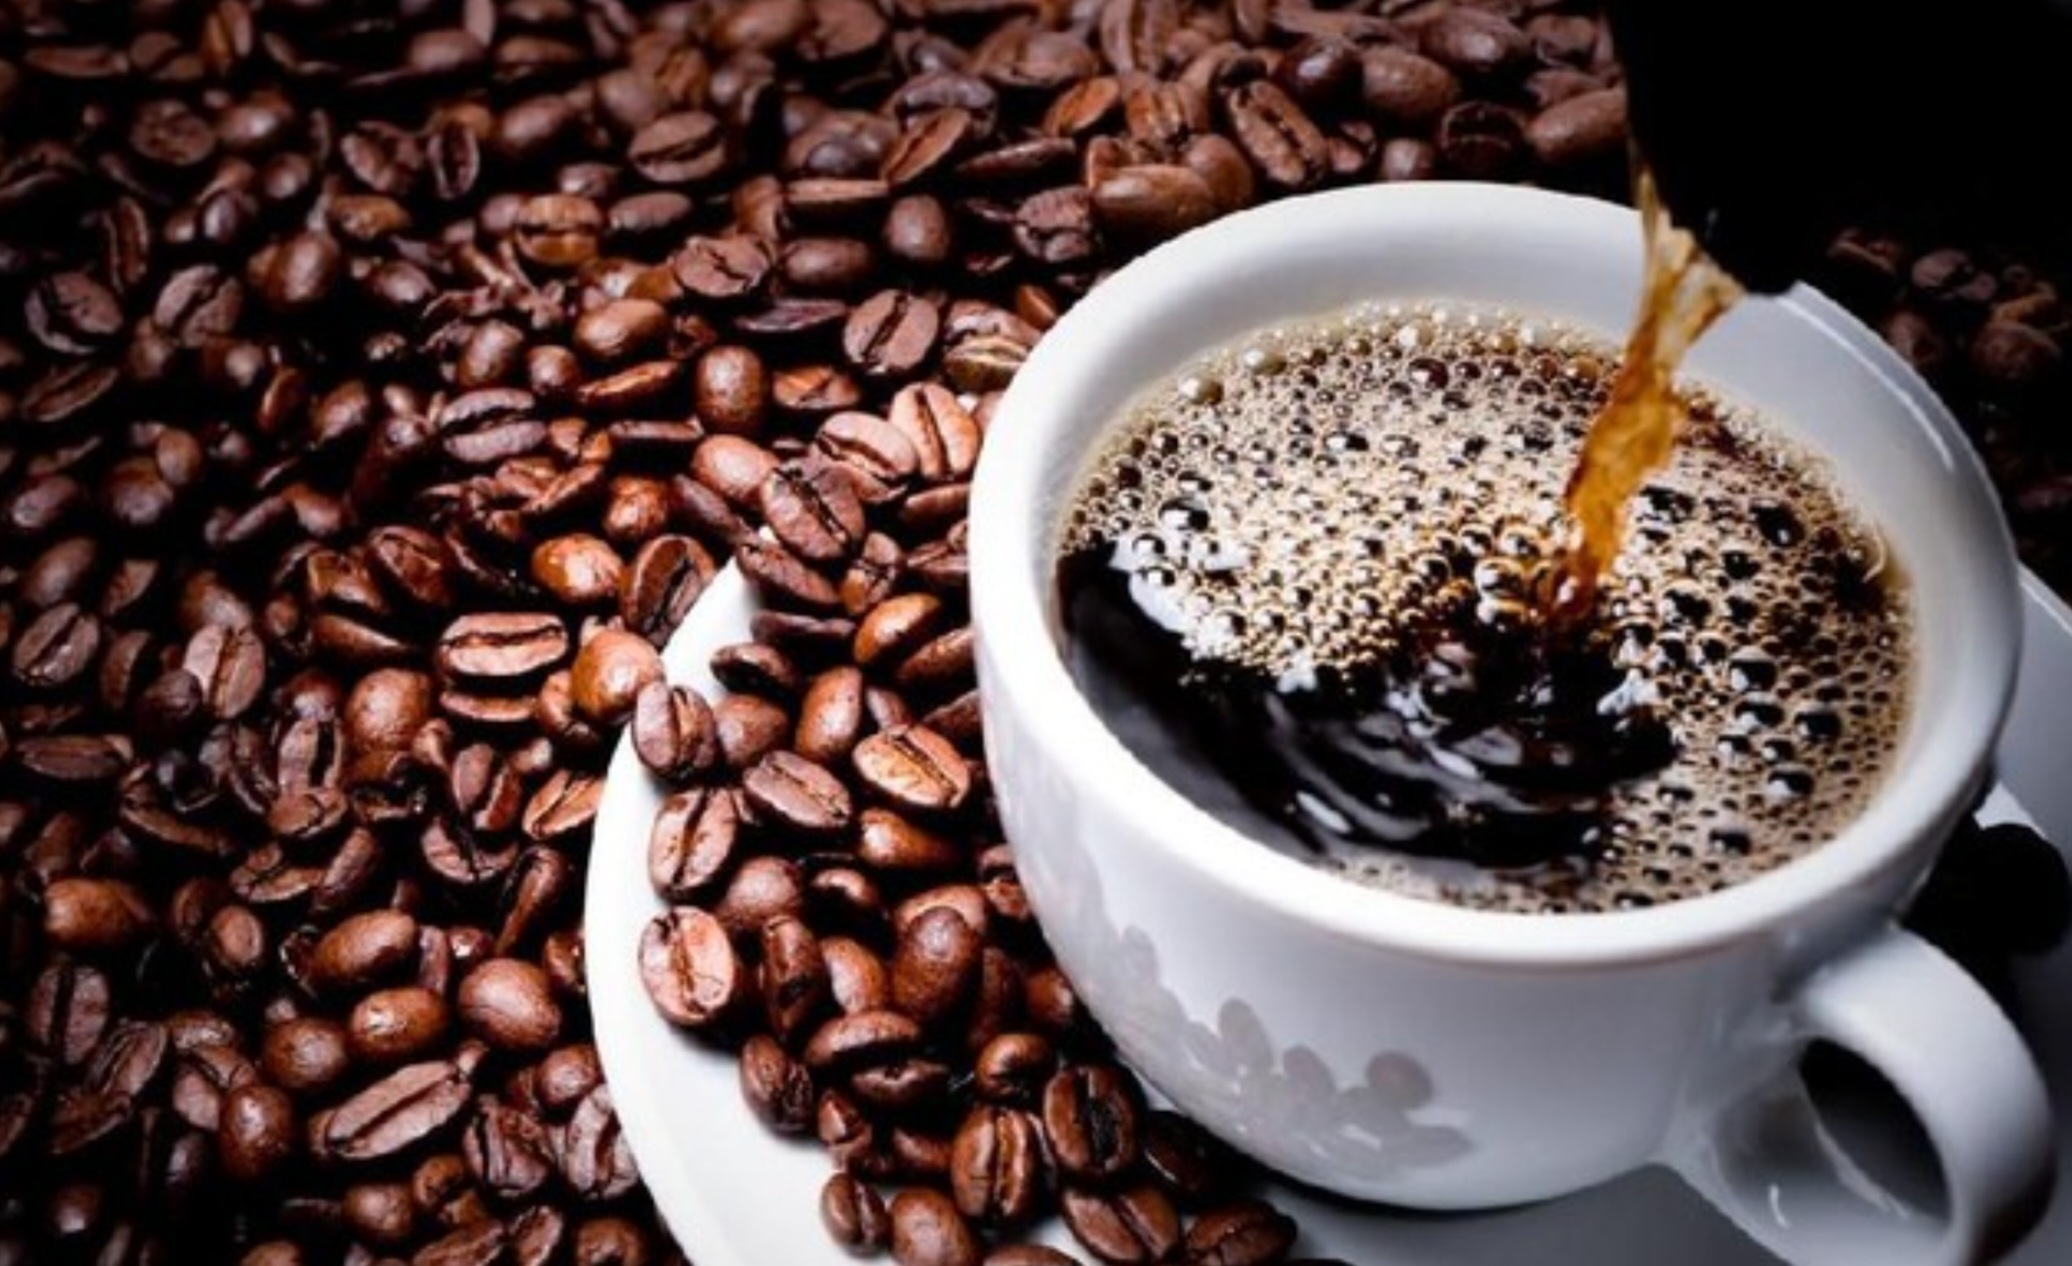 Manfaat Kopi untuk Diet, Apa Benar Kafein Bisa Menurunkan Berat Badan?